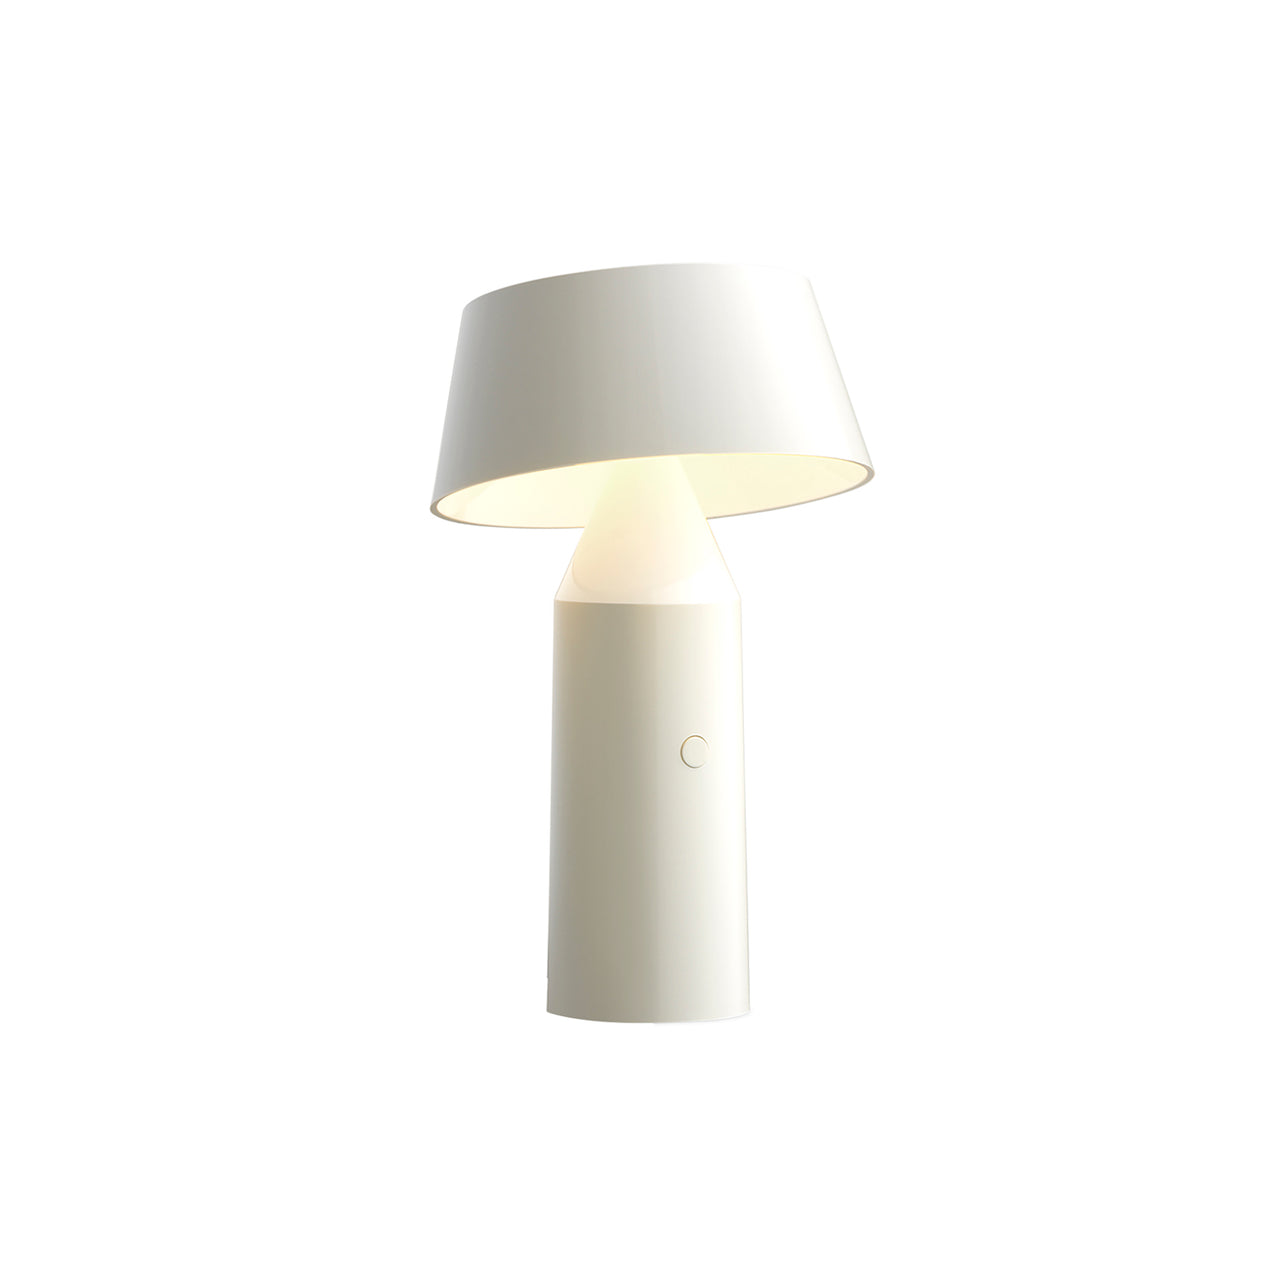 Bicoca Table Lamp: Portable + Off-White